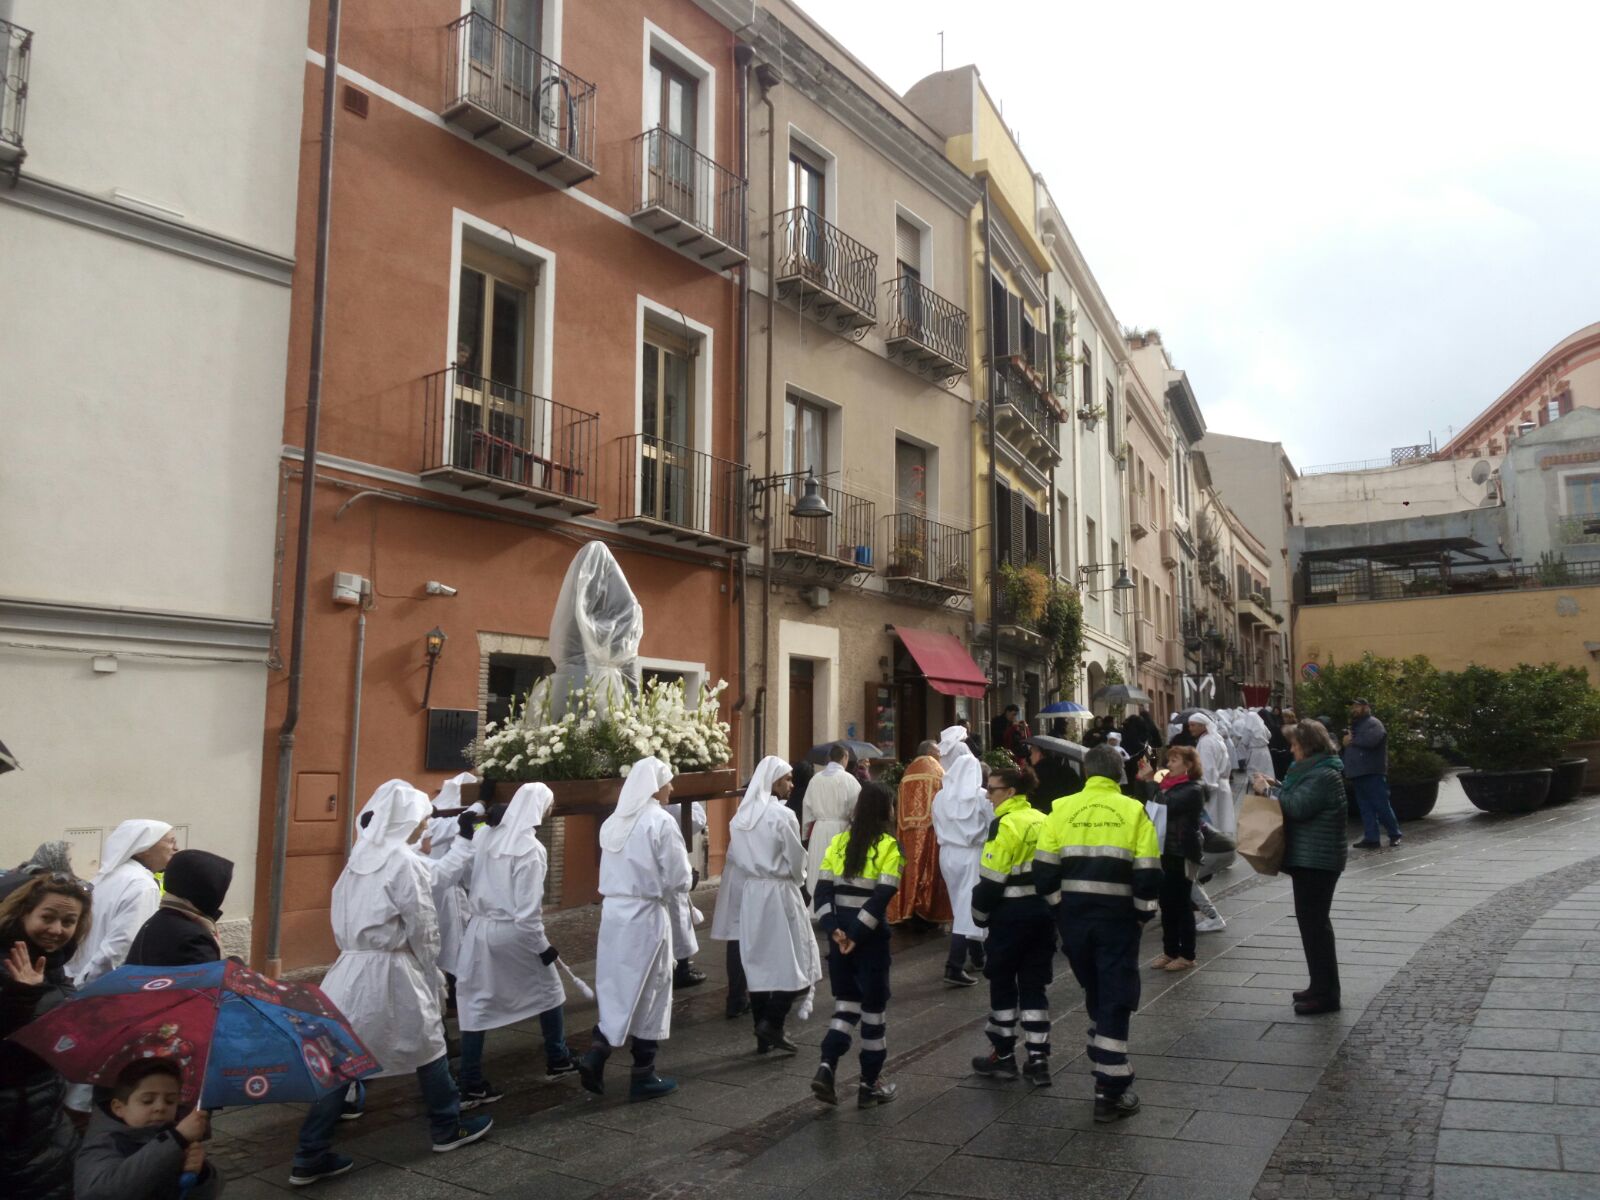 processione Arciconfraternita ss crocifisso piazza san giacomo (8)